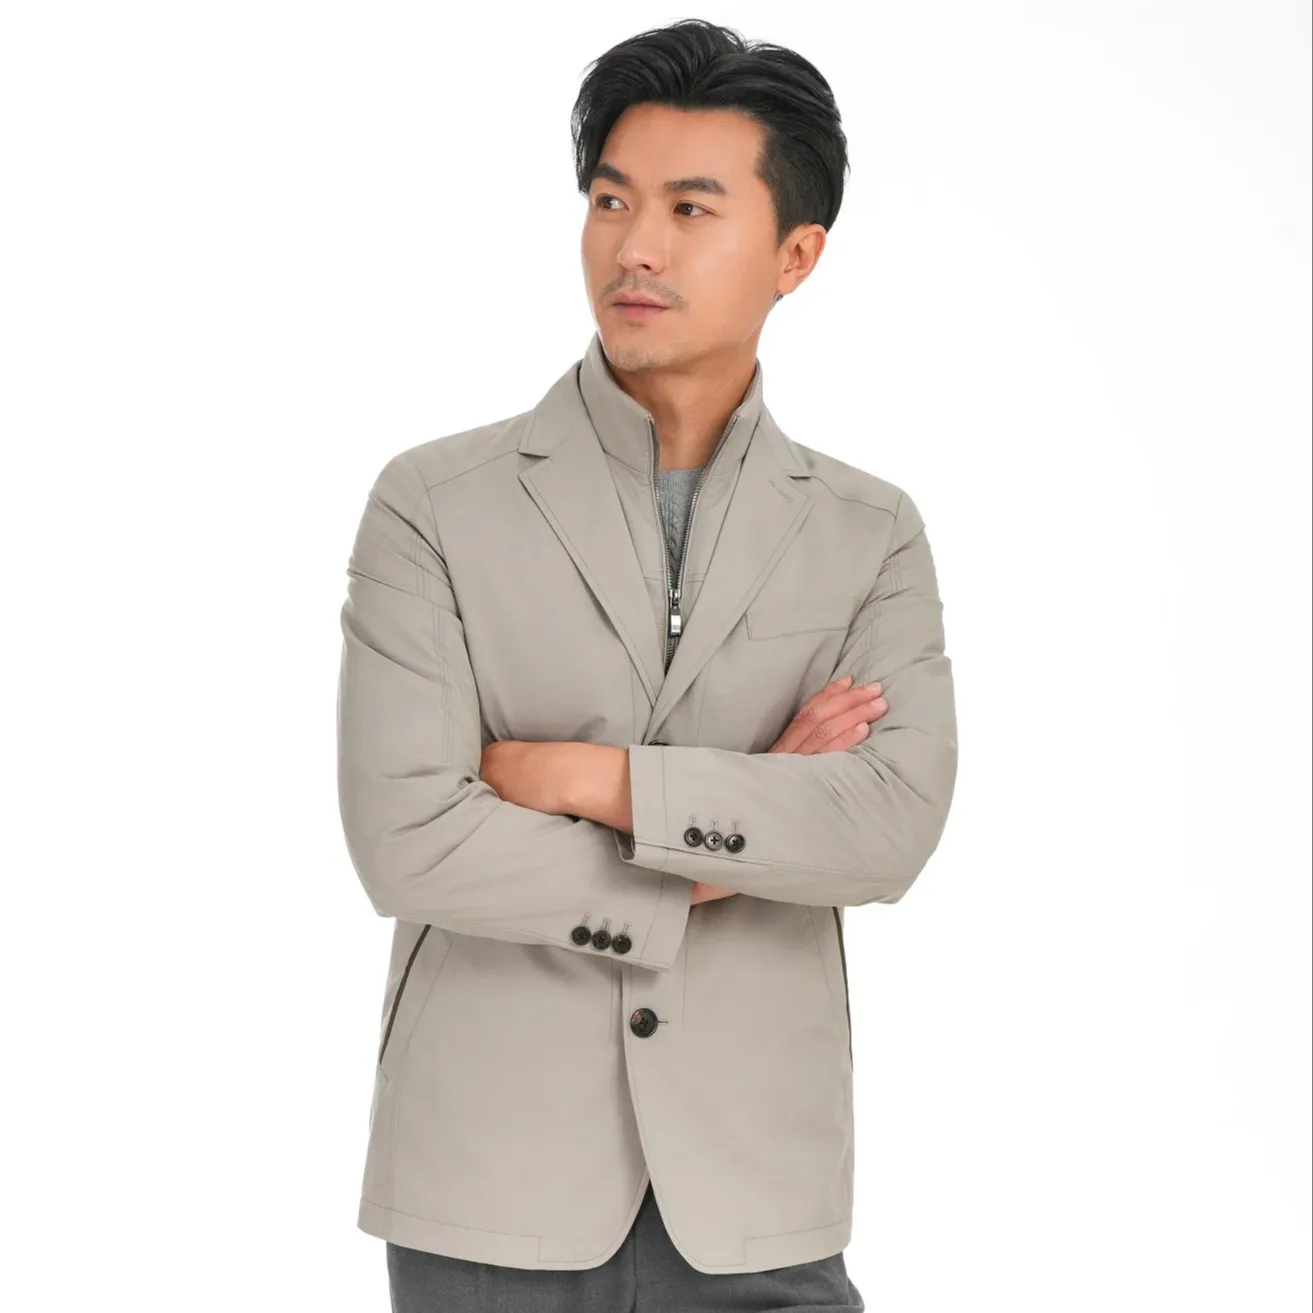 Trajes personalizados MTM para hombre, chaquetas informales transpirables y antiarrugas hechas a medida para hombre